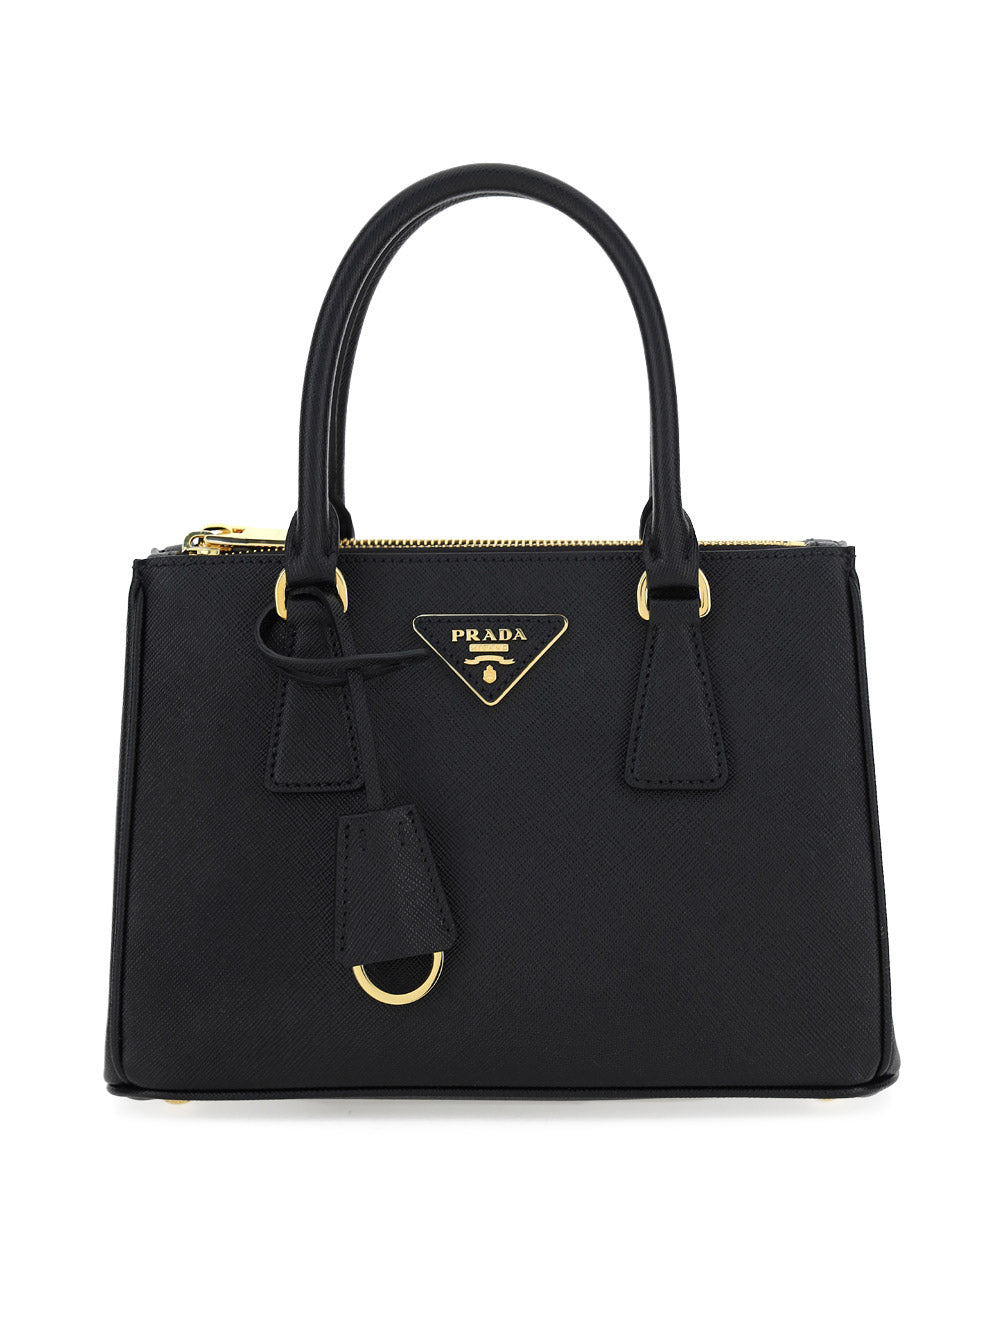 Galleria Saffiano Leather Small Bag - Black